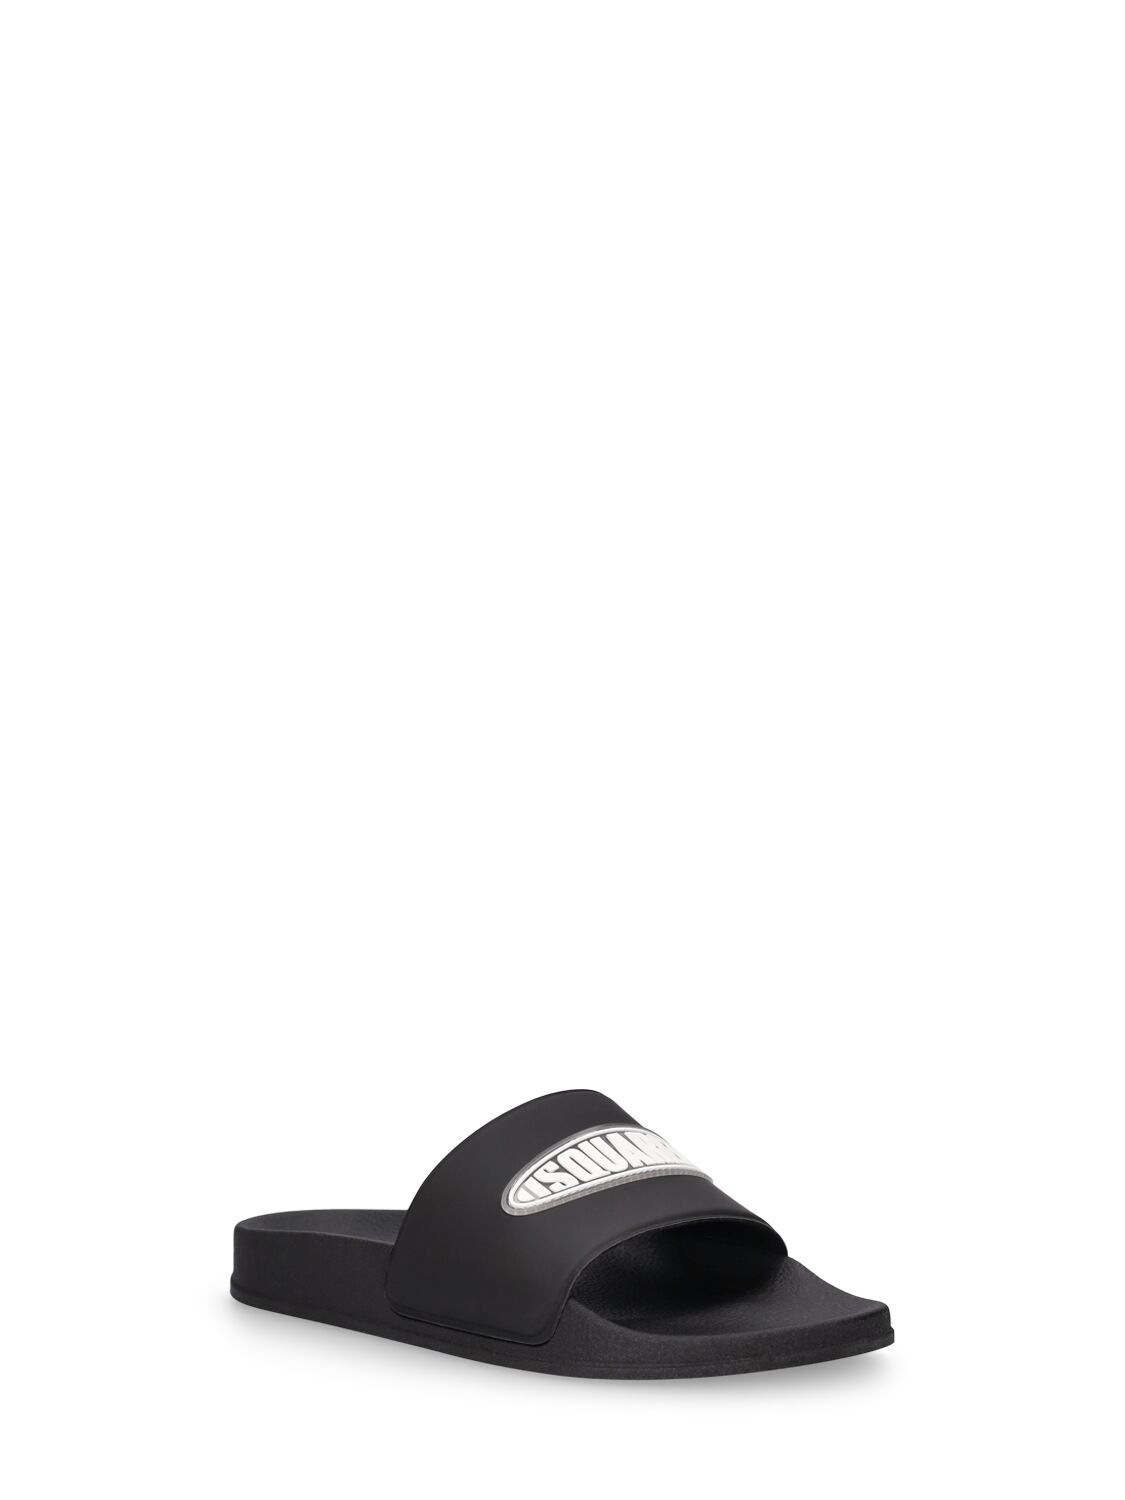 Shop Dsquared2 Logo Print Rubber Slide Sandals In Black